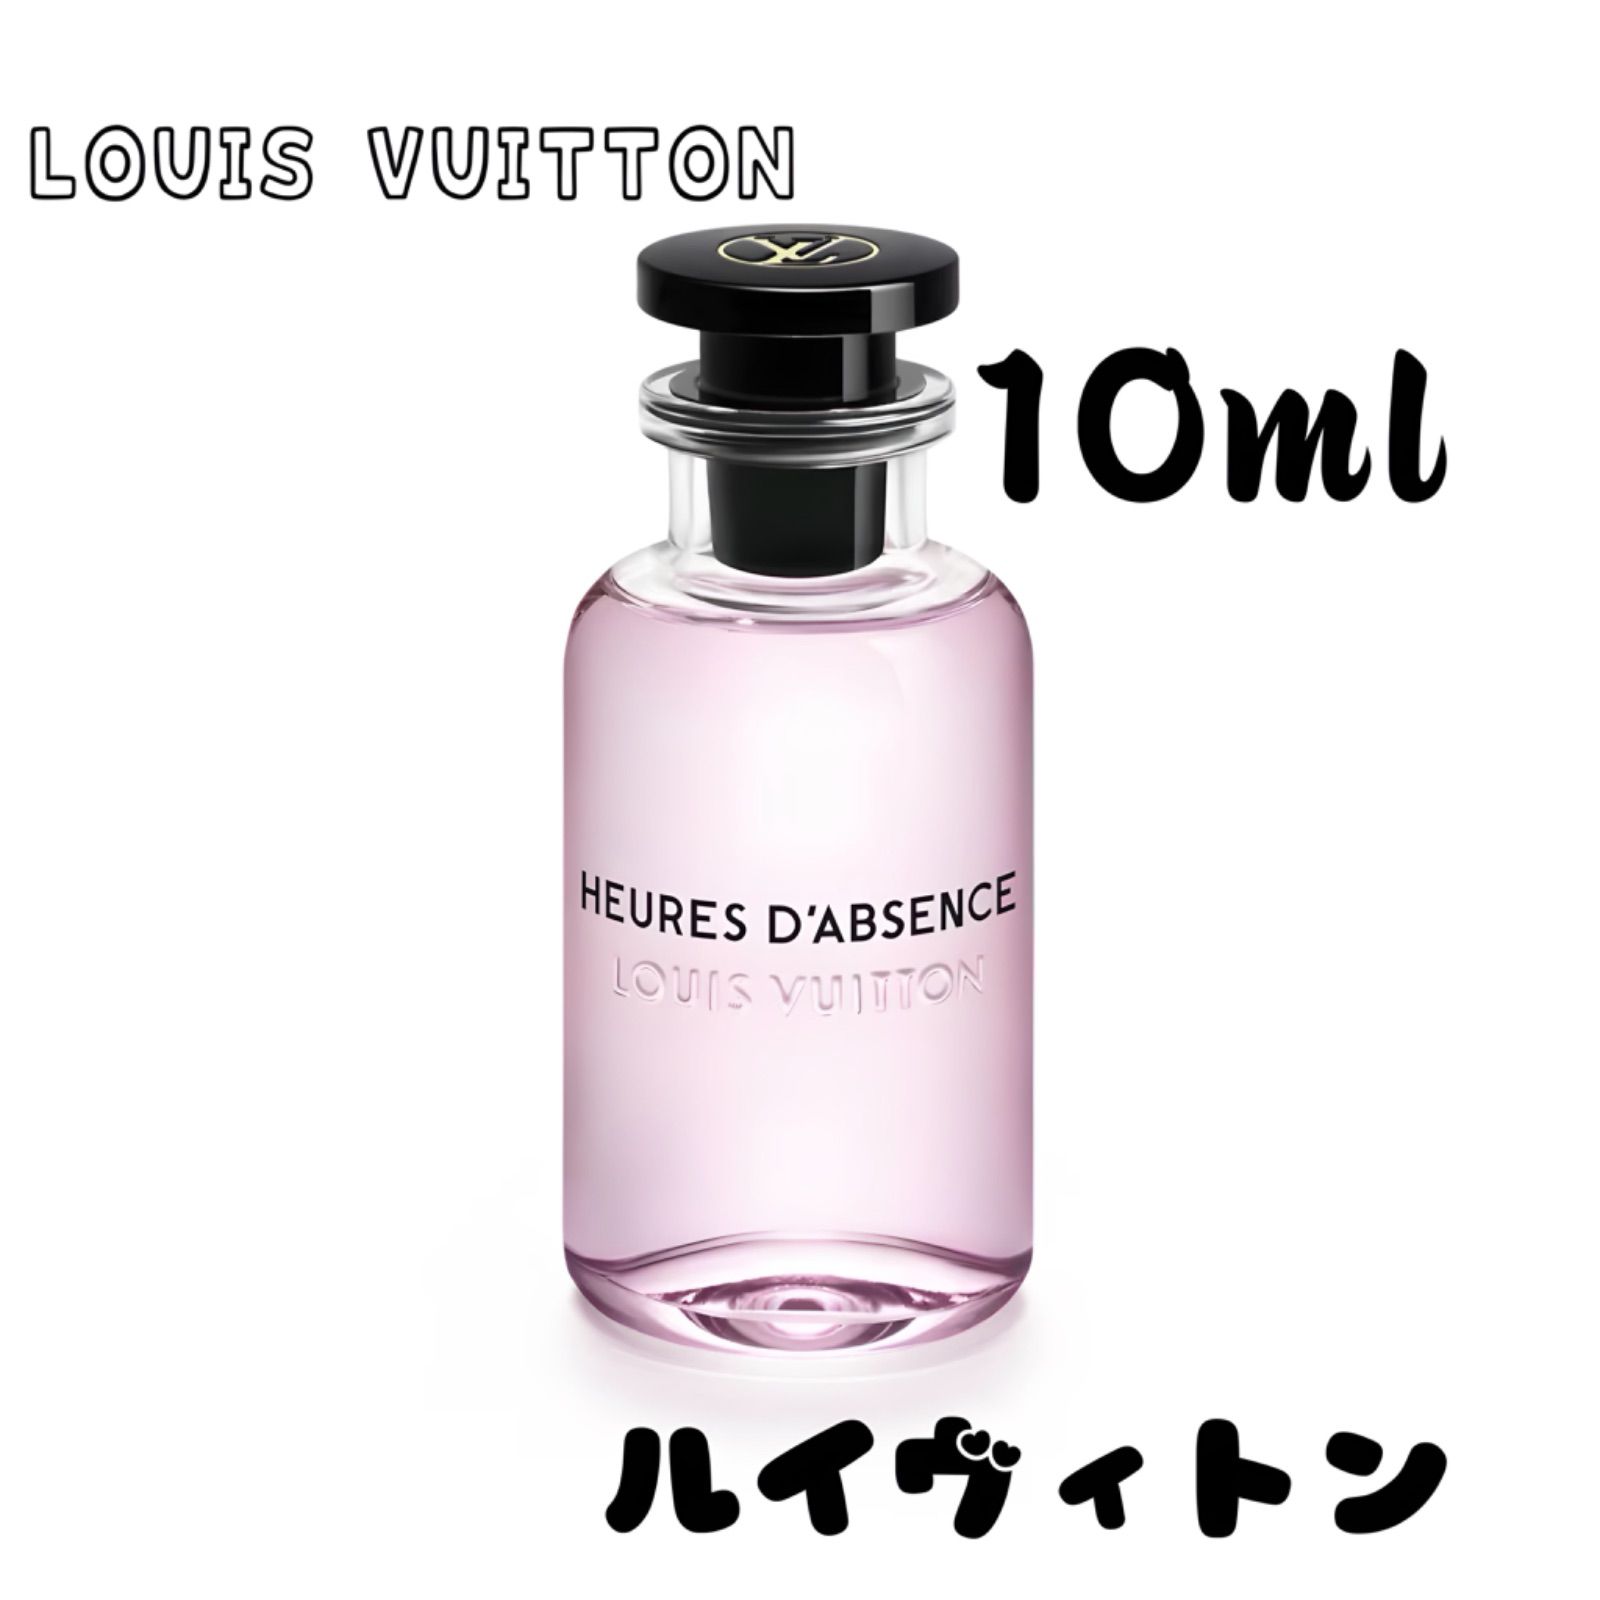 LOUIS VUITTON ウール・ダプサンス - 香水(女性用)